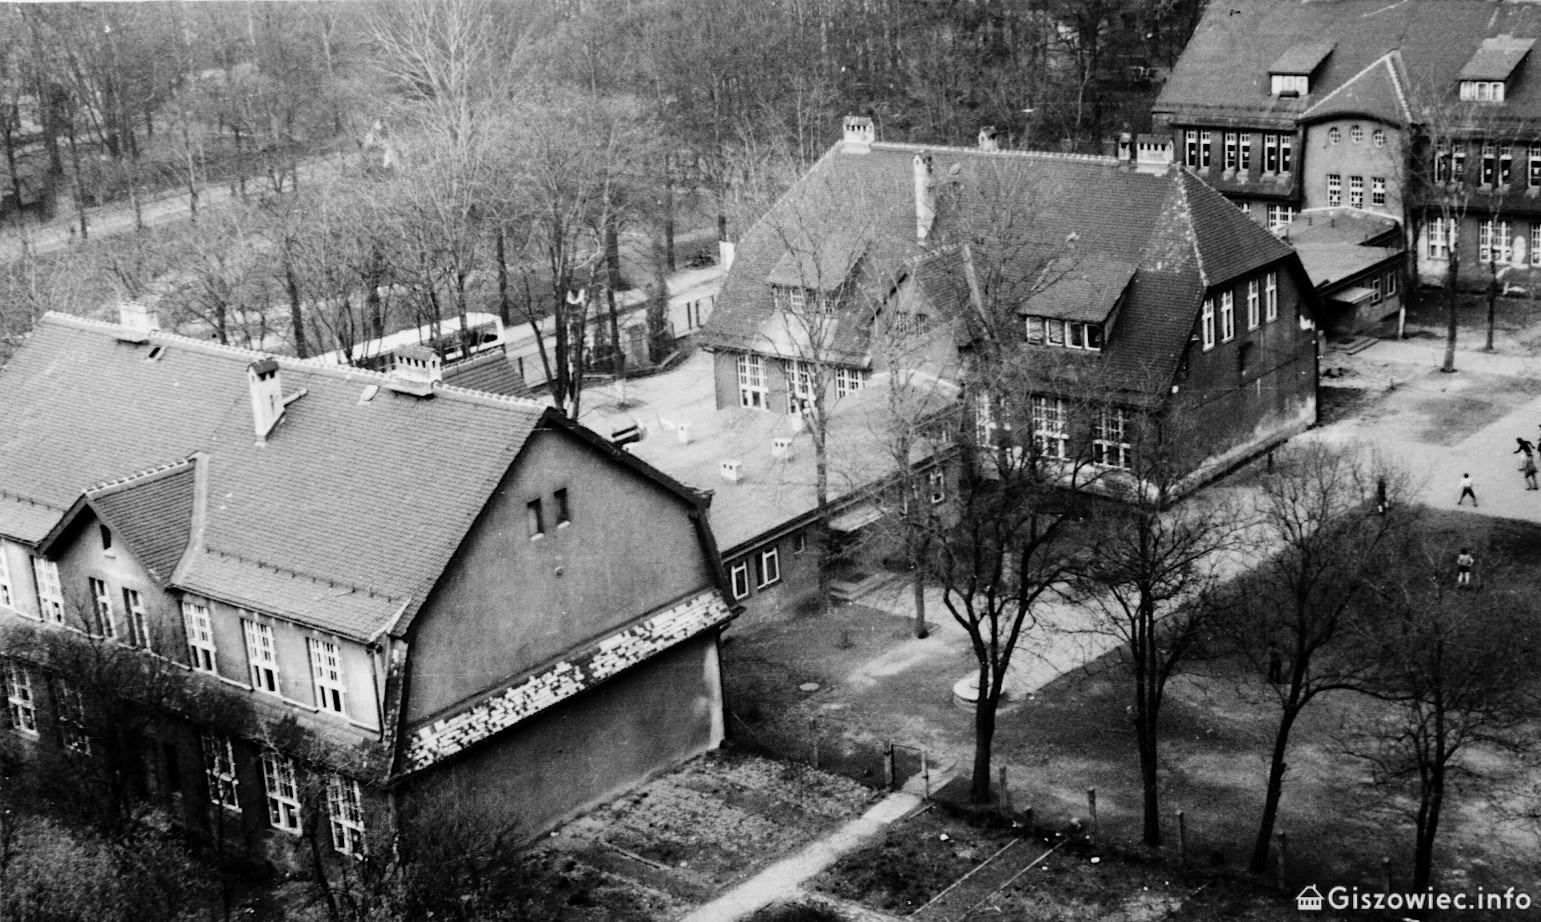 Giszowiec, Budynki szkolne, już z łącznikami - widok z bloku przy ul. Wojciecha. Po lewej stronie widoczny autobus Jelcz, który miał przystanek końcowy na placu.